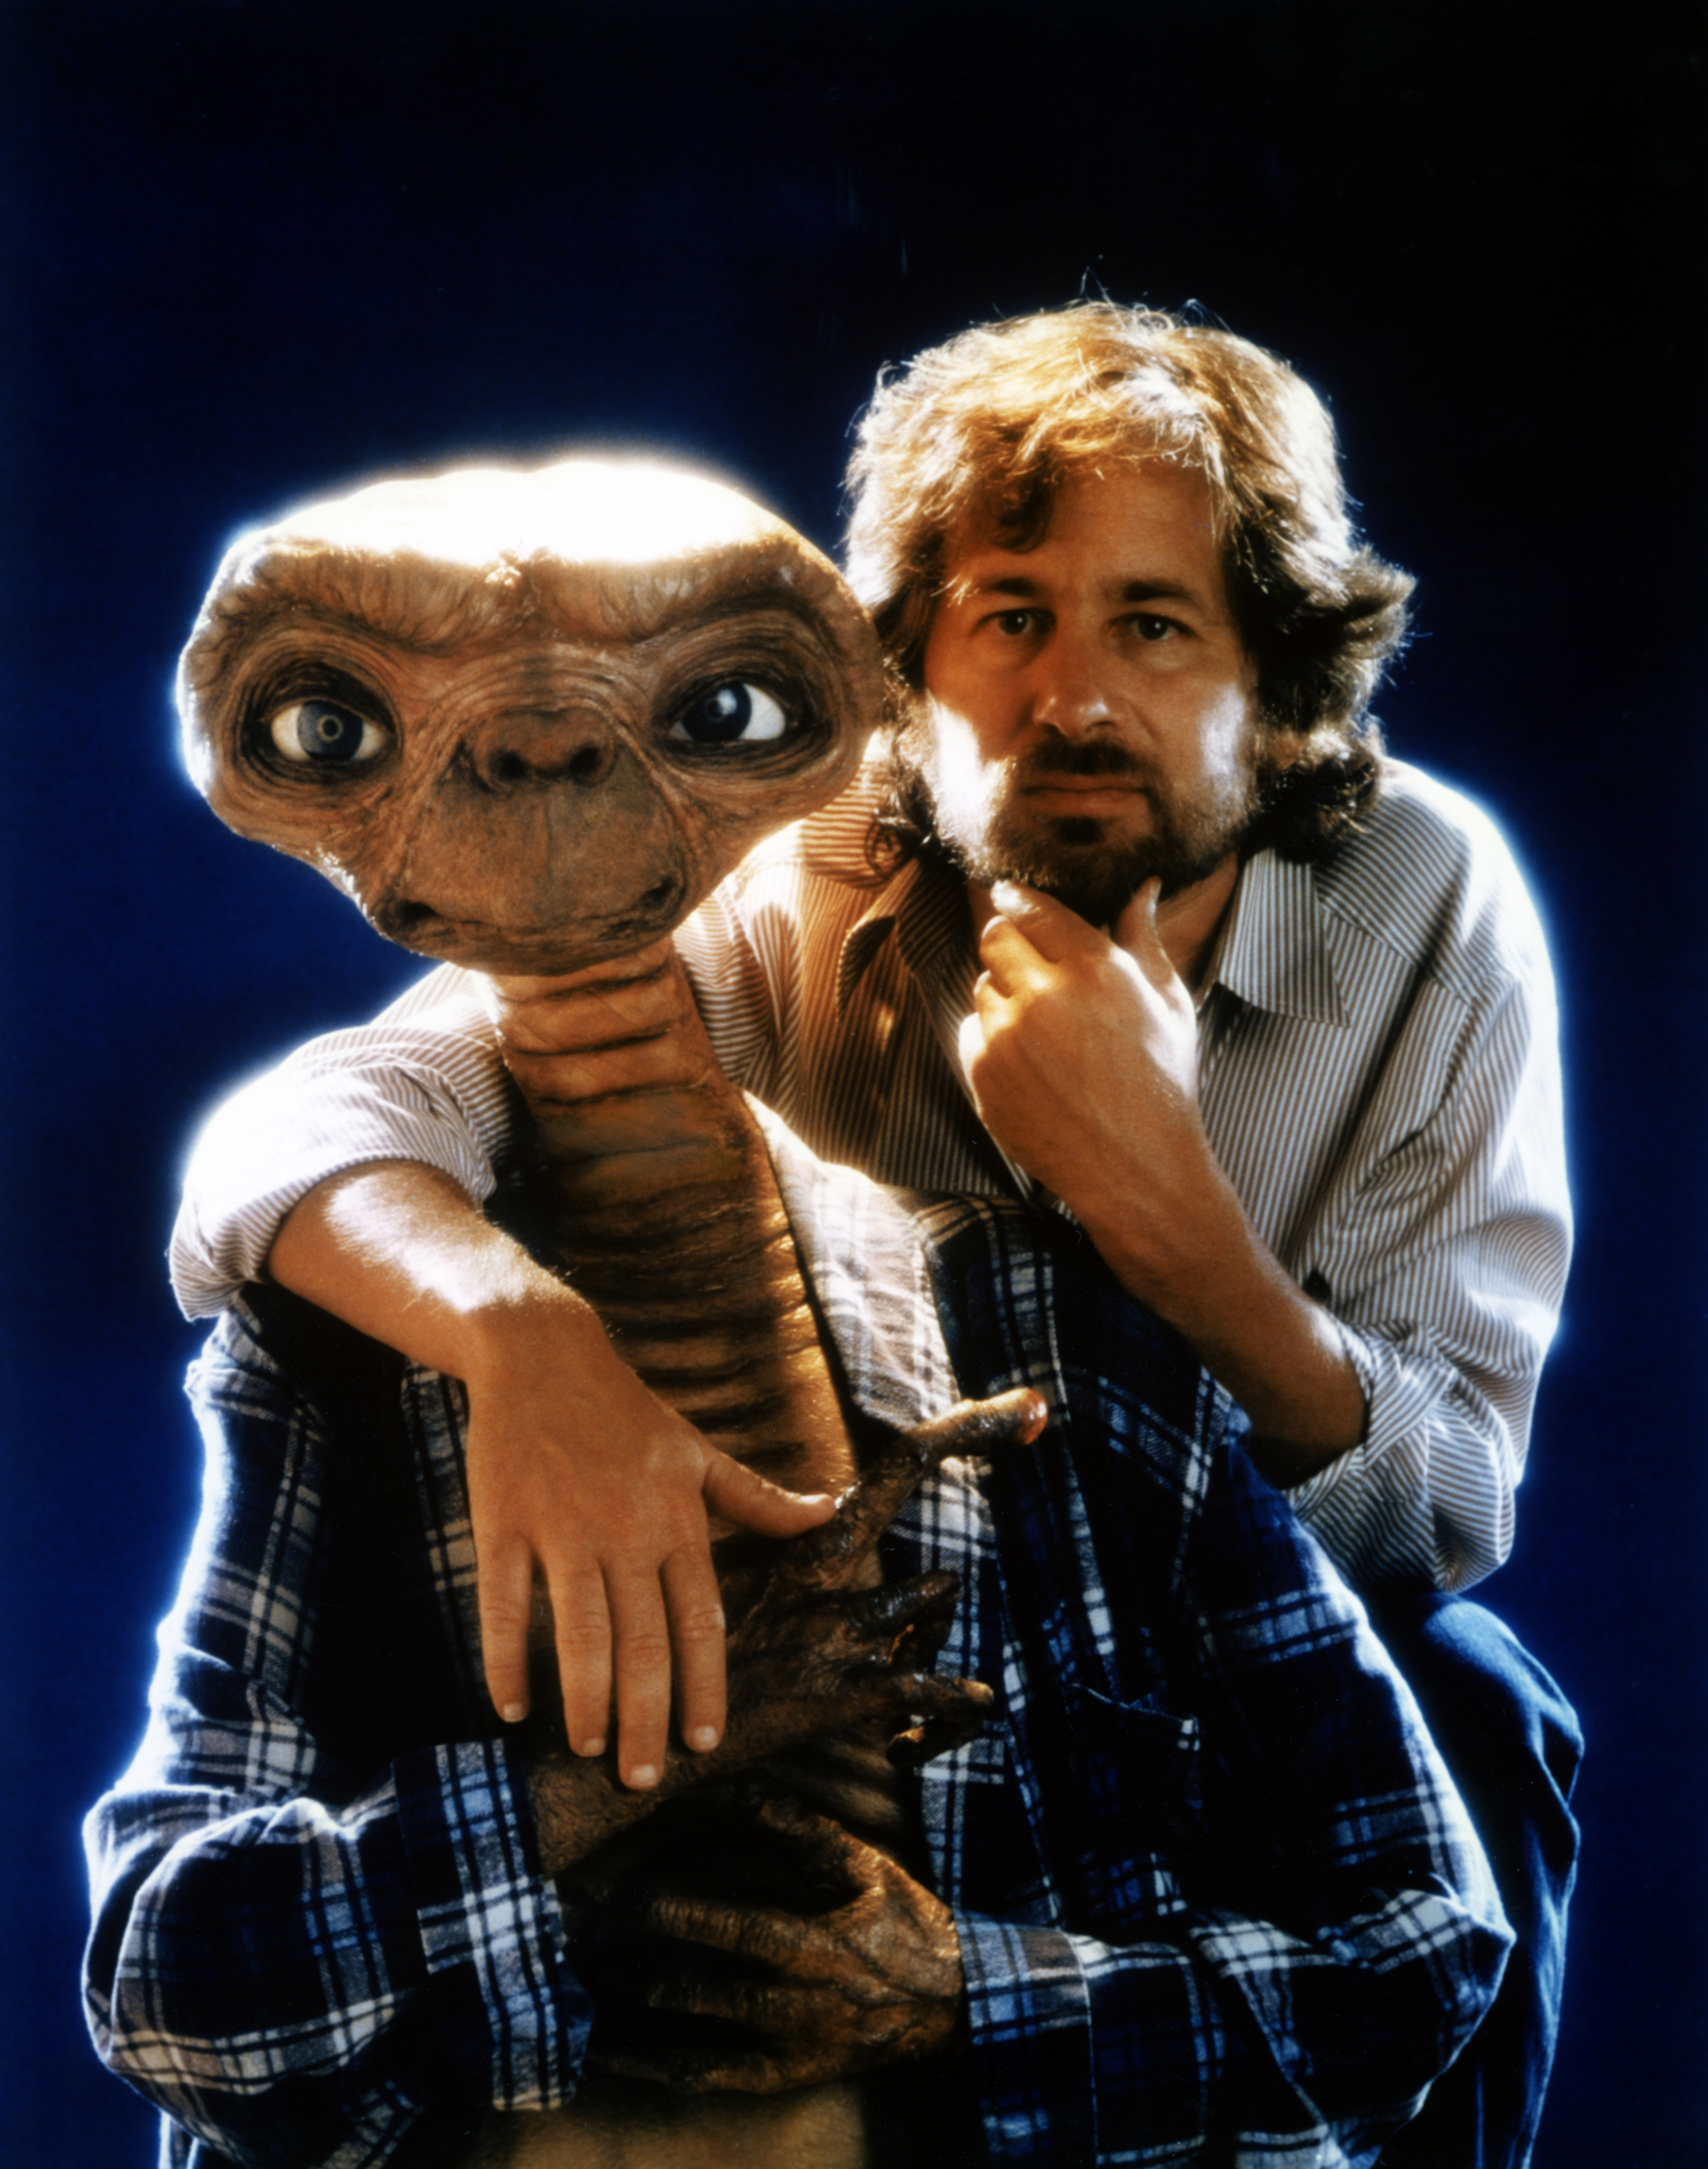 Steven Spielberg con E.T, su criatura. La película recaudó 800 millones de dólares y se convirtió en la que más dinero había logrado en la historia hasta ese momento, desplazando a Star Wars (Photo by Sunset Boulevard/Corbis via Getty Images)